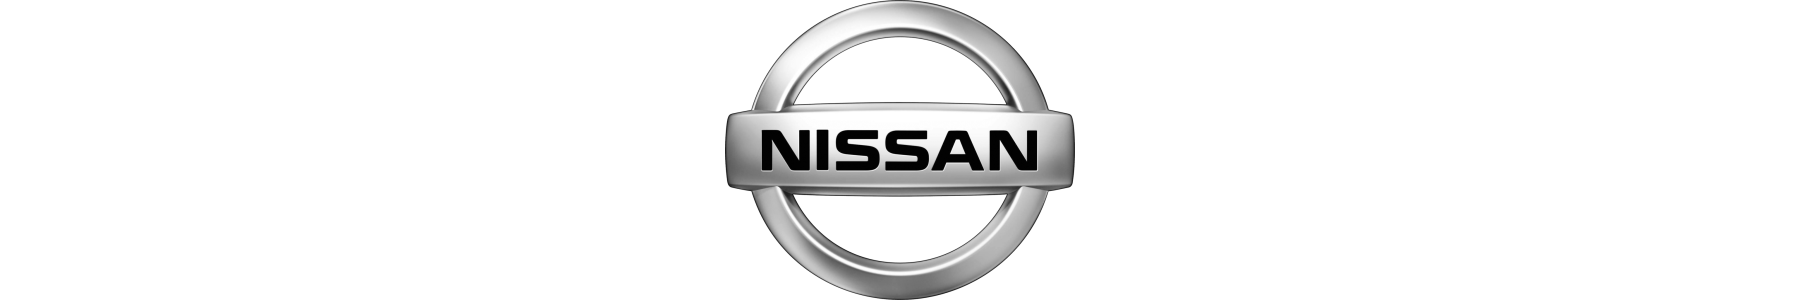 22h22 - Accessoires et équipements pour véhicule NISSAN